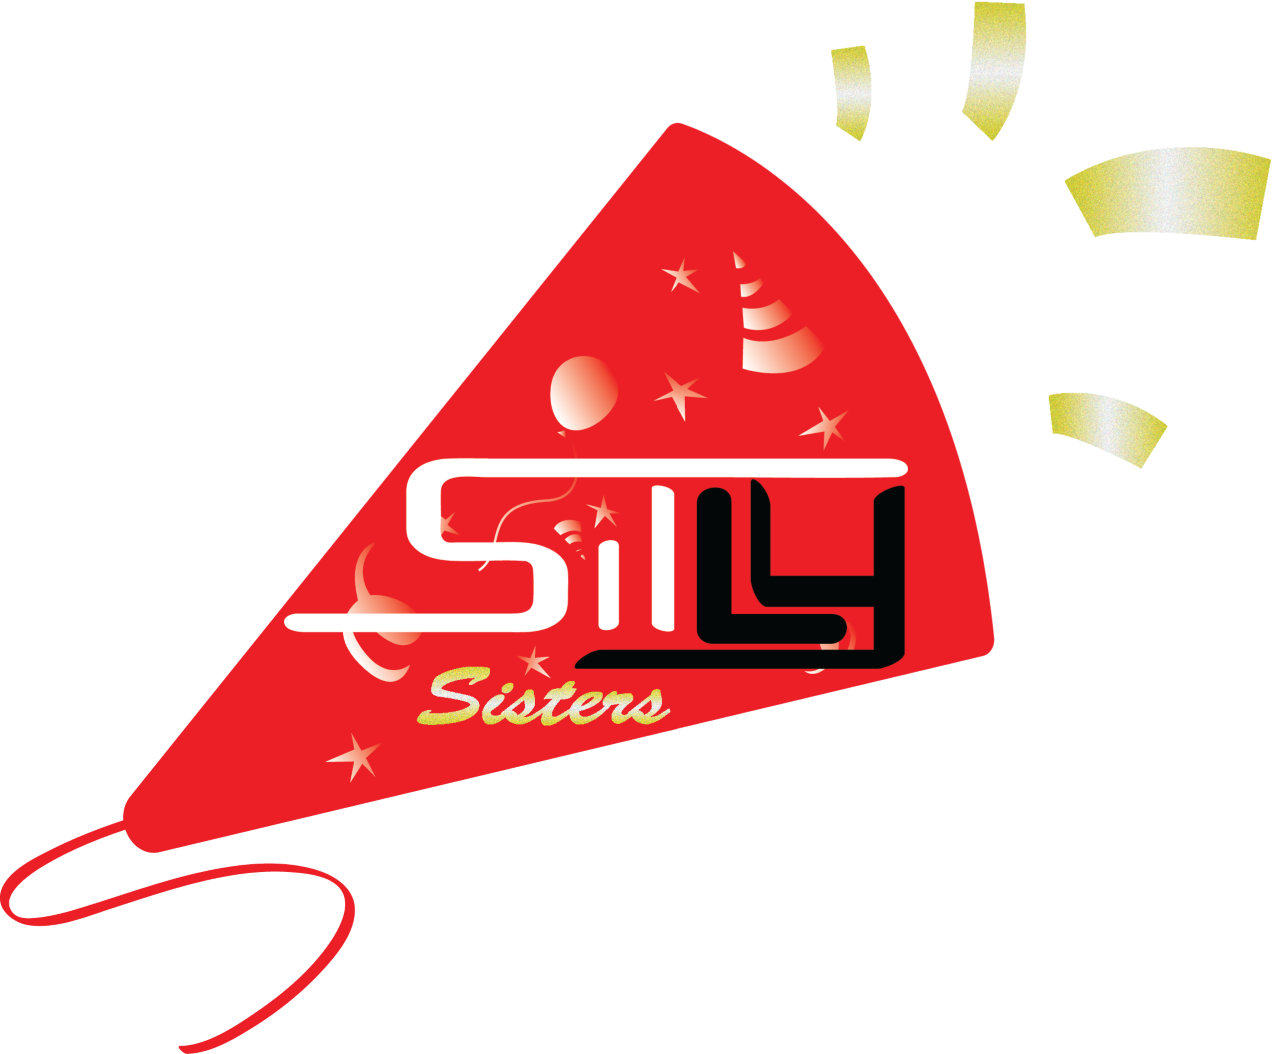 SilLySistersEntertainment-logo